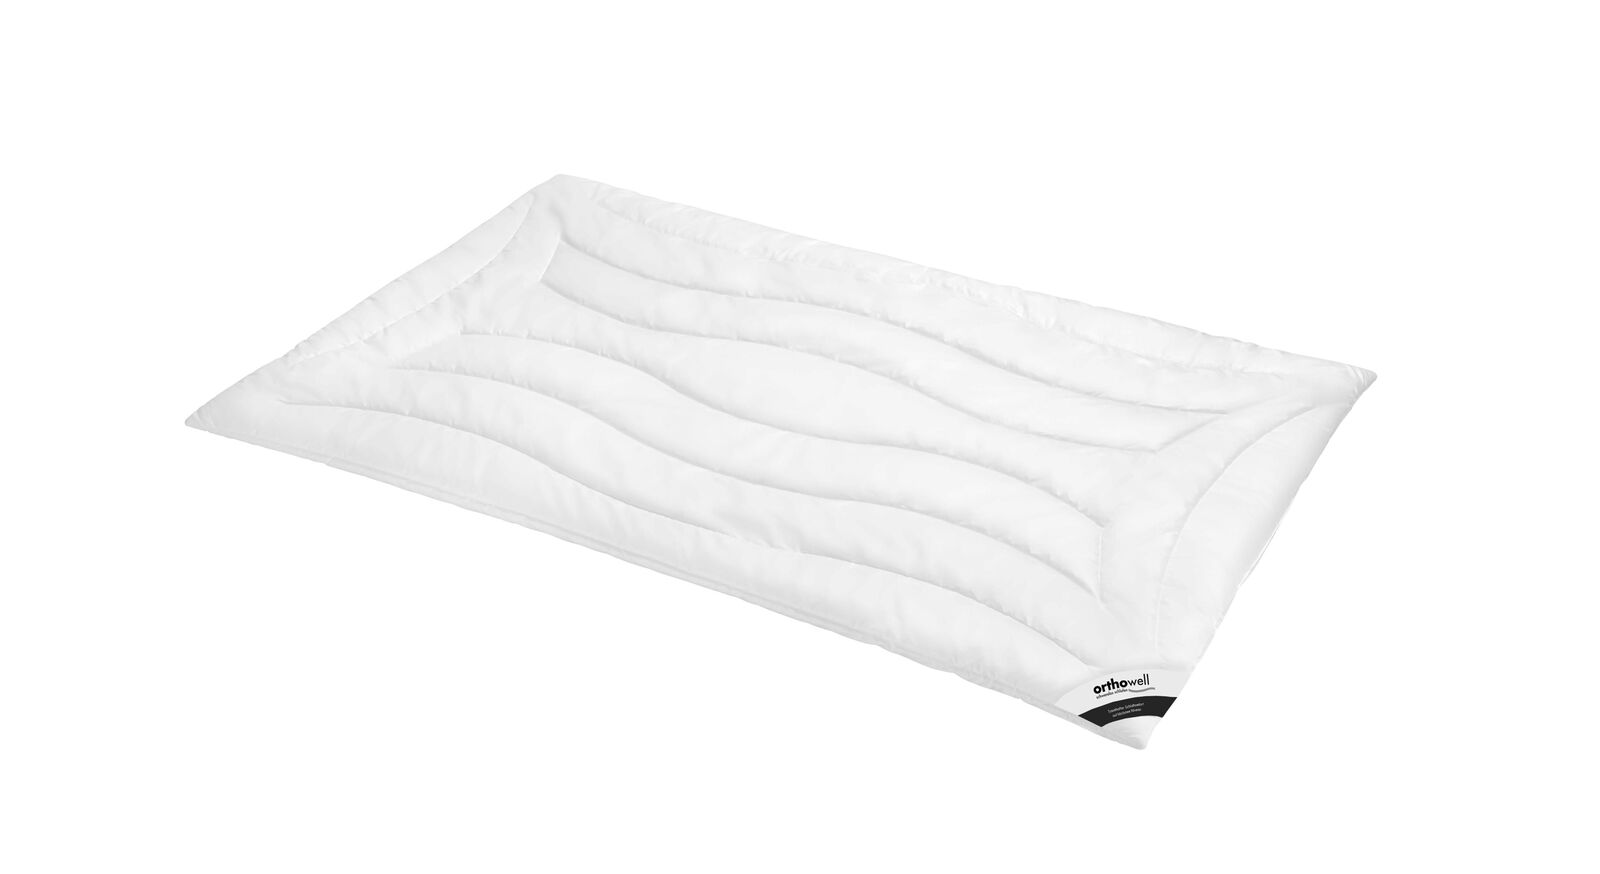 Markenfaser-Bettdecke orthowell Superior warm mit Baumwoll-Bezug